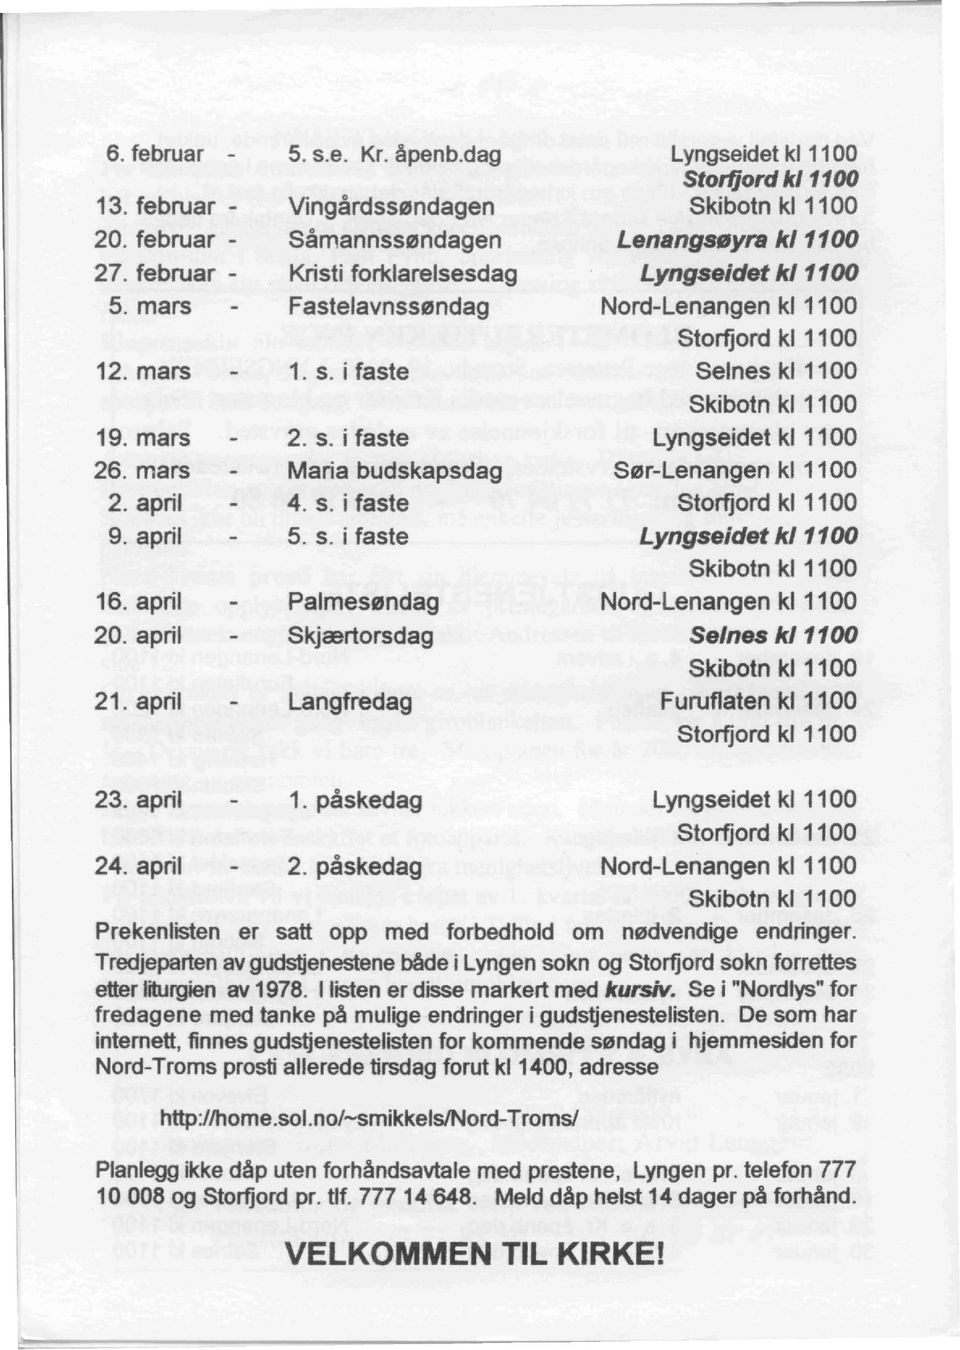 mars Maria budskapsdag Ser-Lenangen kl 1100 2. april 4. s. i taste Storfjord kl 1100 9. april 5. s. i taste Lyngseidet k/1100 Skibotn kl 1100 16. april Palmesendag Nord-Lenangen kl 1100 20.